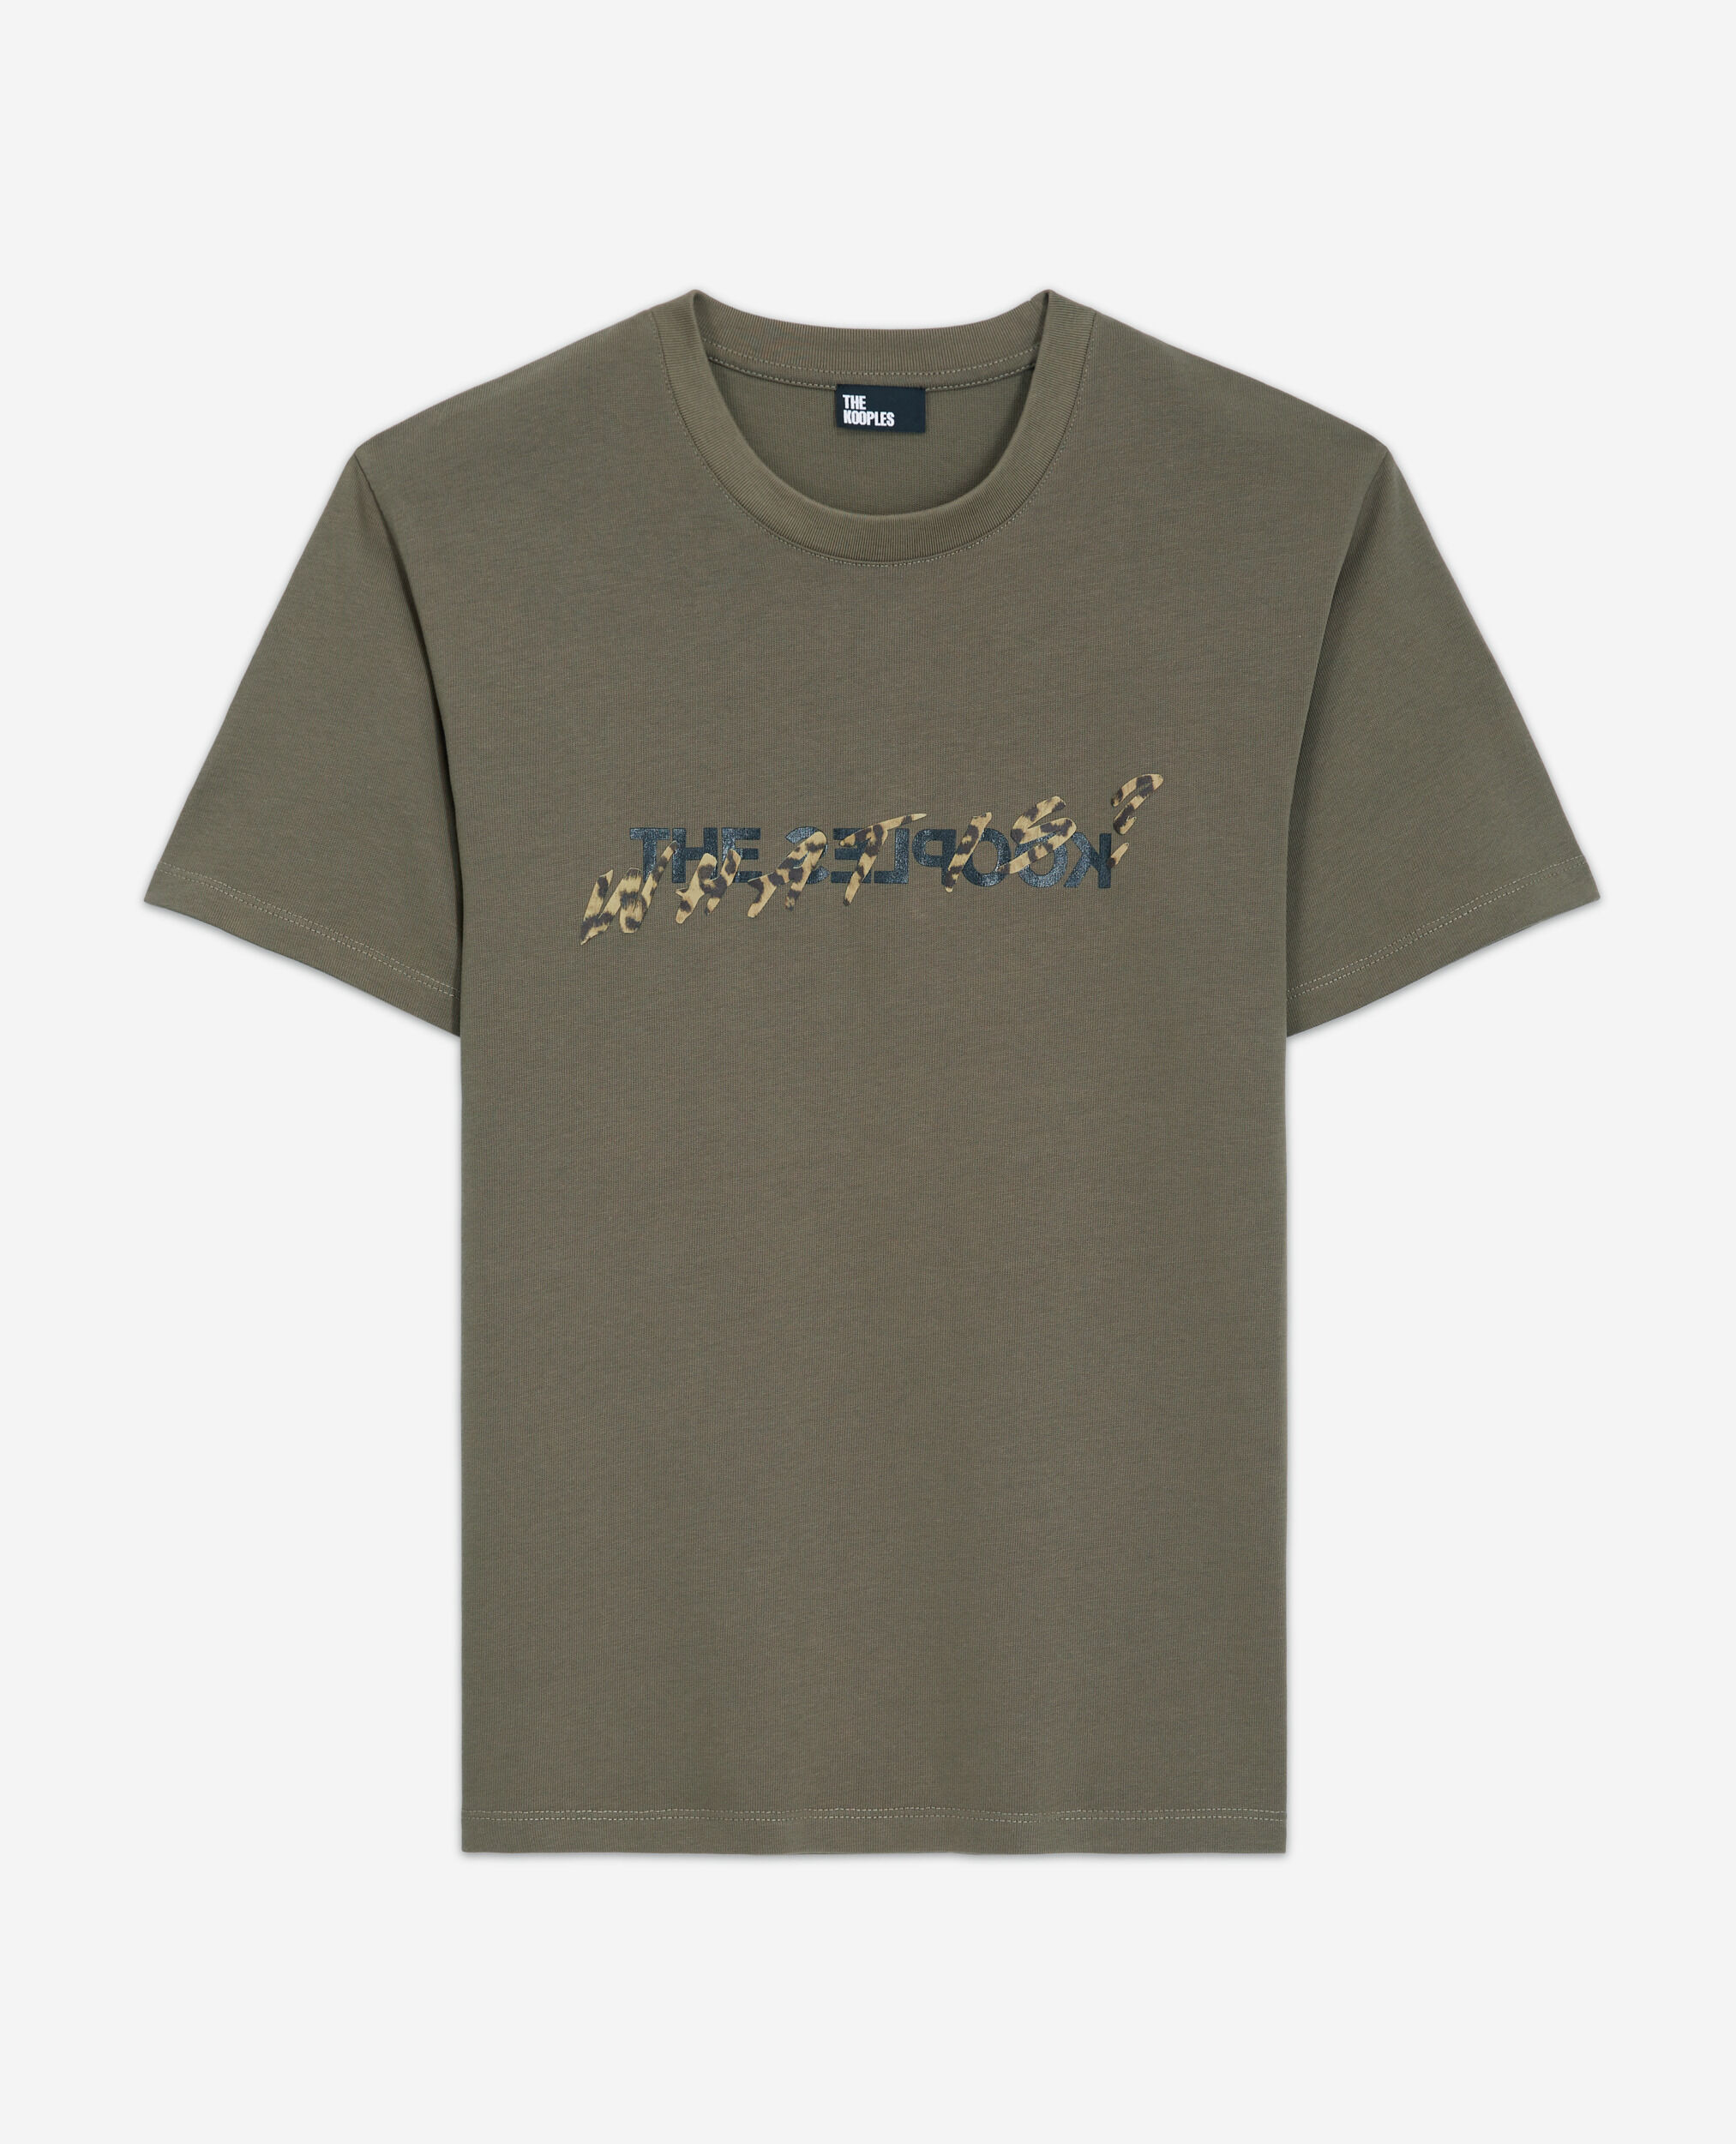 Khakifarbenes T-Shirt mit Leopardenmuster und "What is"-Schriftzug, ALGUE, hi-res image number null